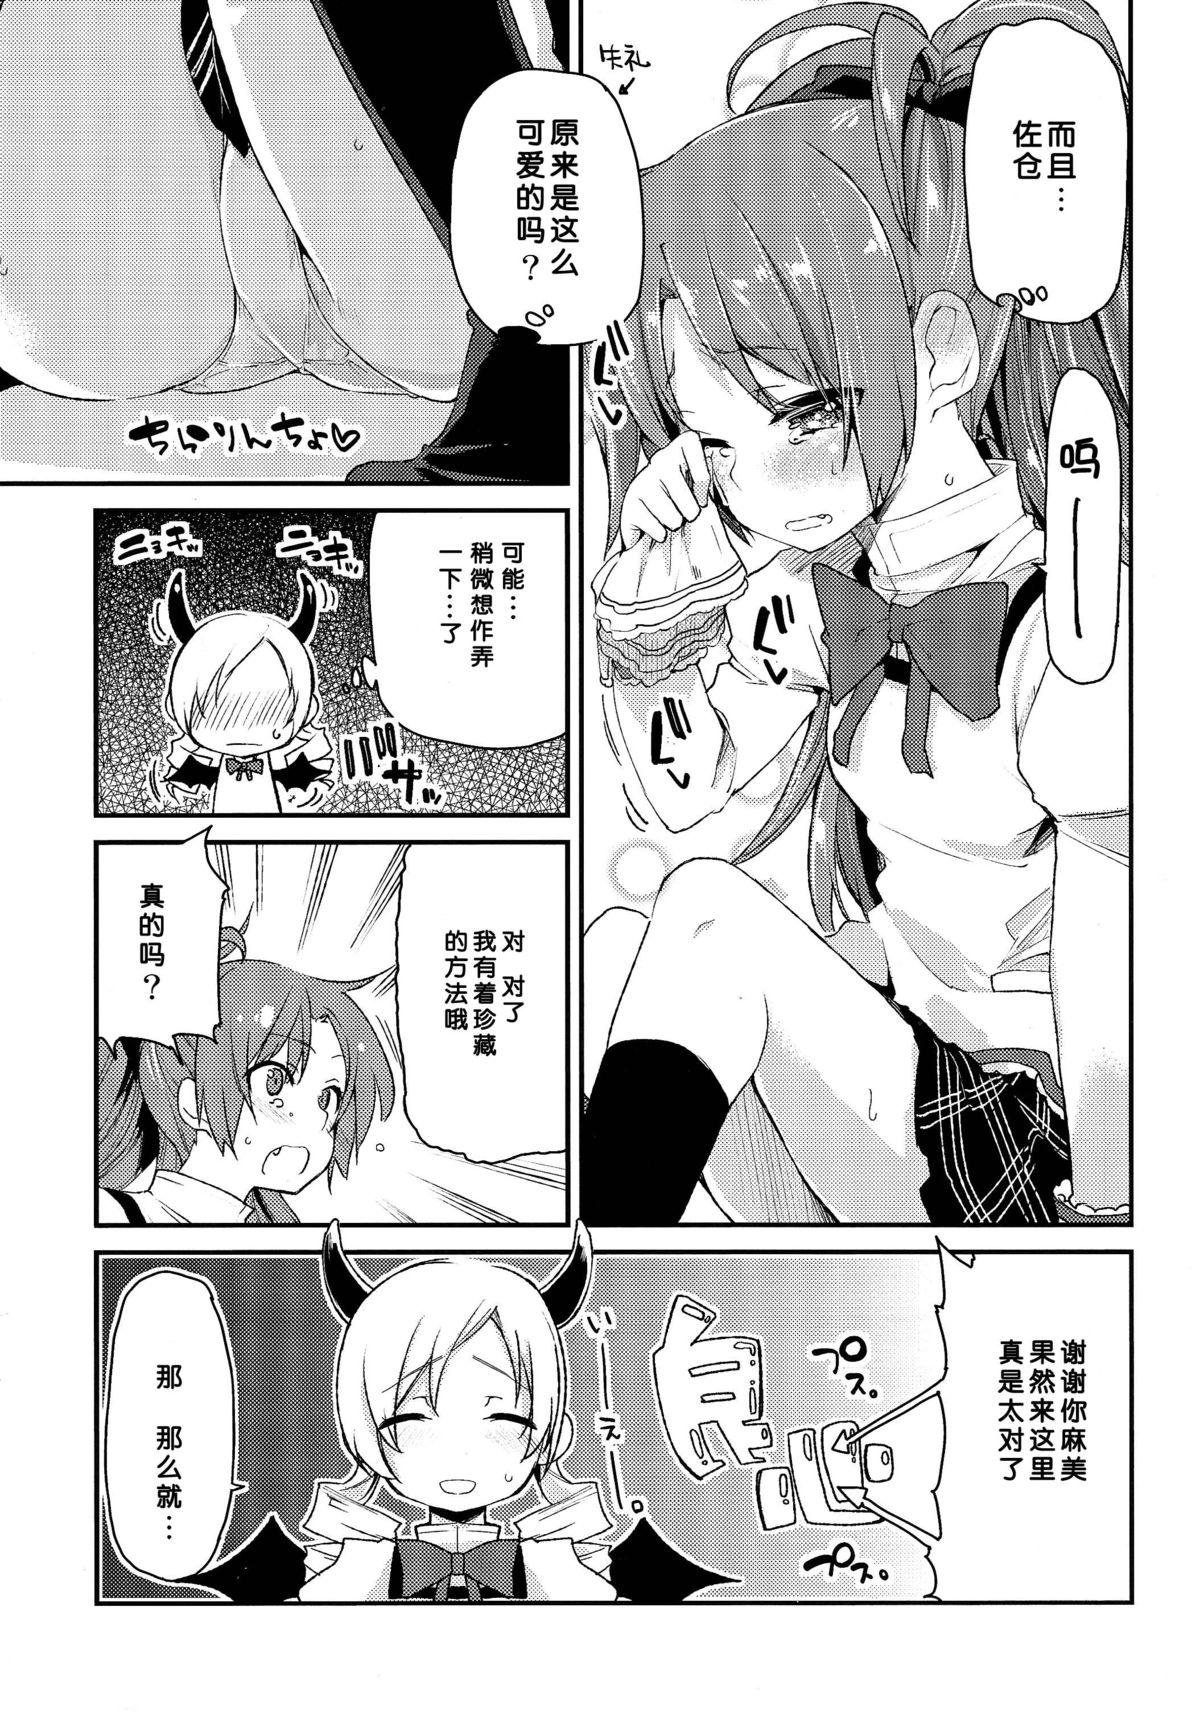 Africa Sakura-san ga Tottemo Kawaii kara - Puella magi madoka magica Gay Kissing - Page 9